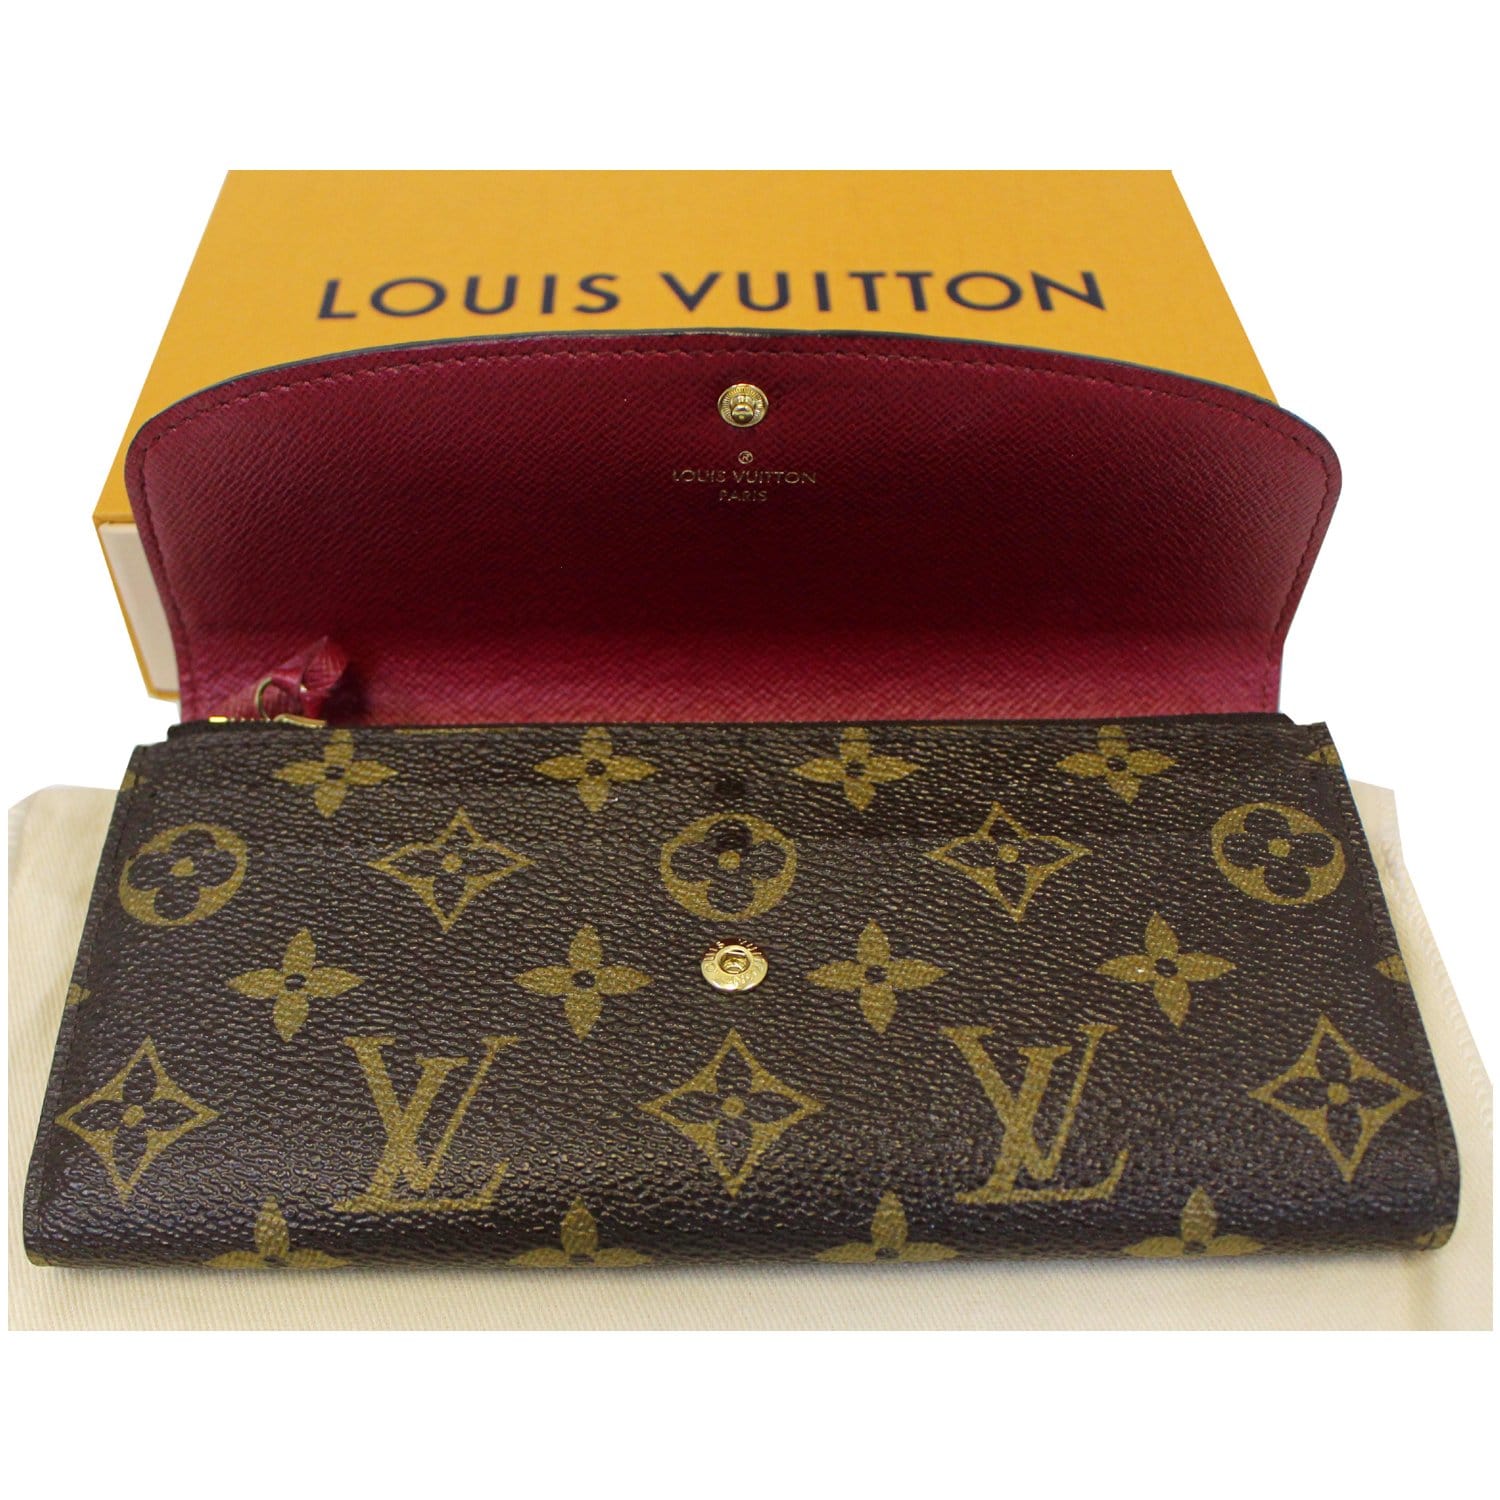 Louis Vuitton, Accessories, Louis Vuitton Portefeuille Emilie 851l33b